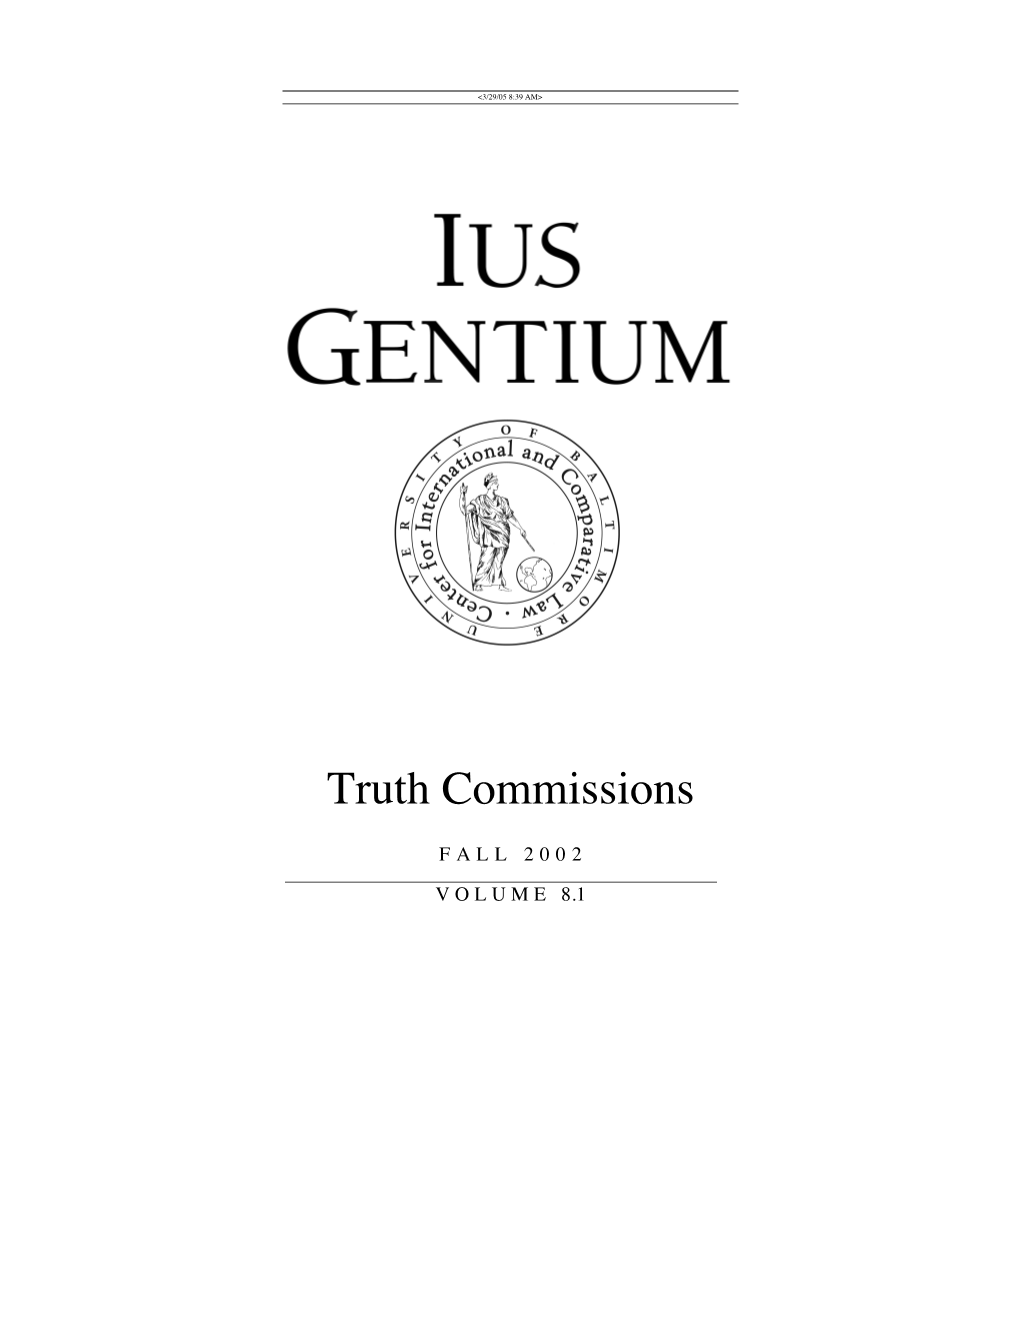 Ius Gentium Volume 8.1 Fall 2002